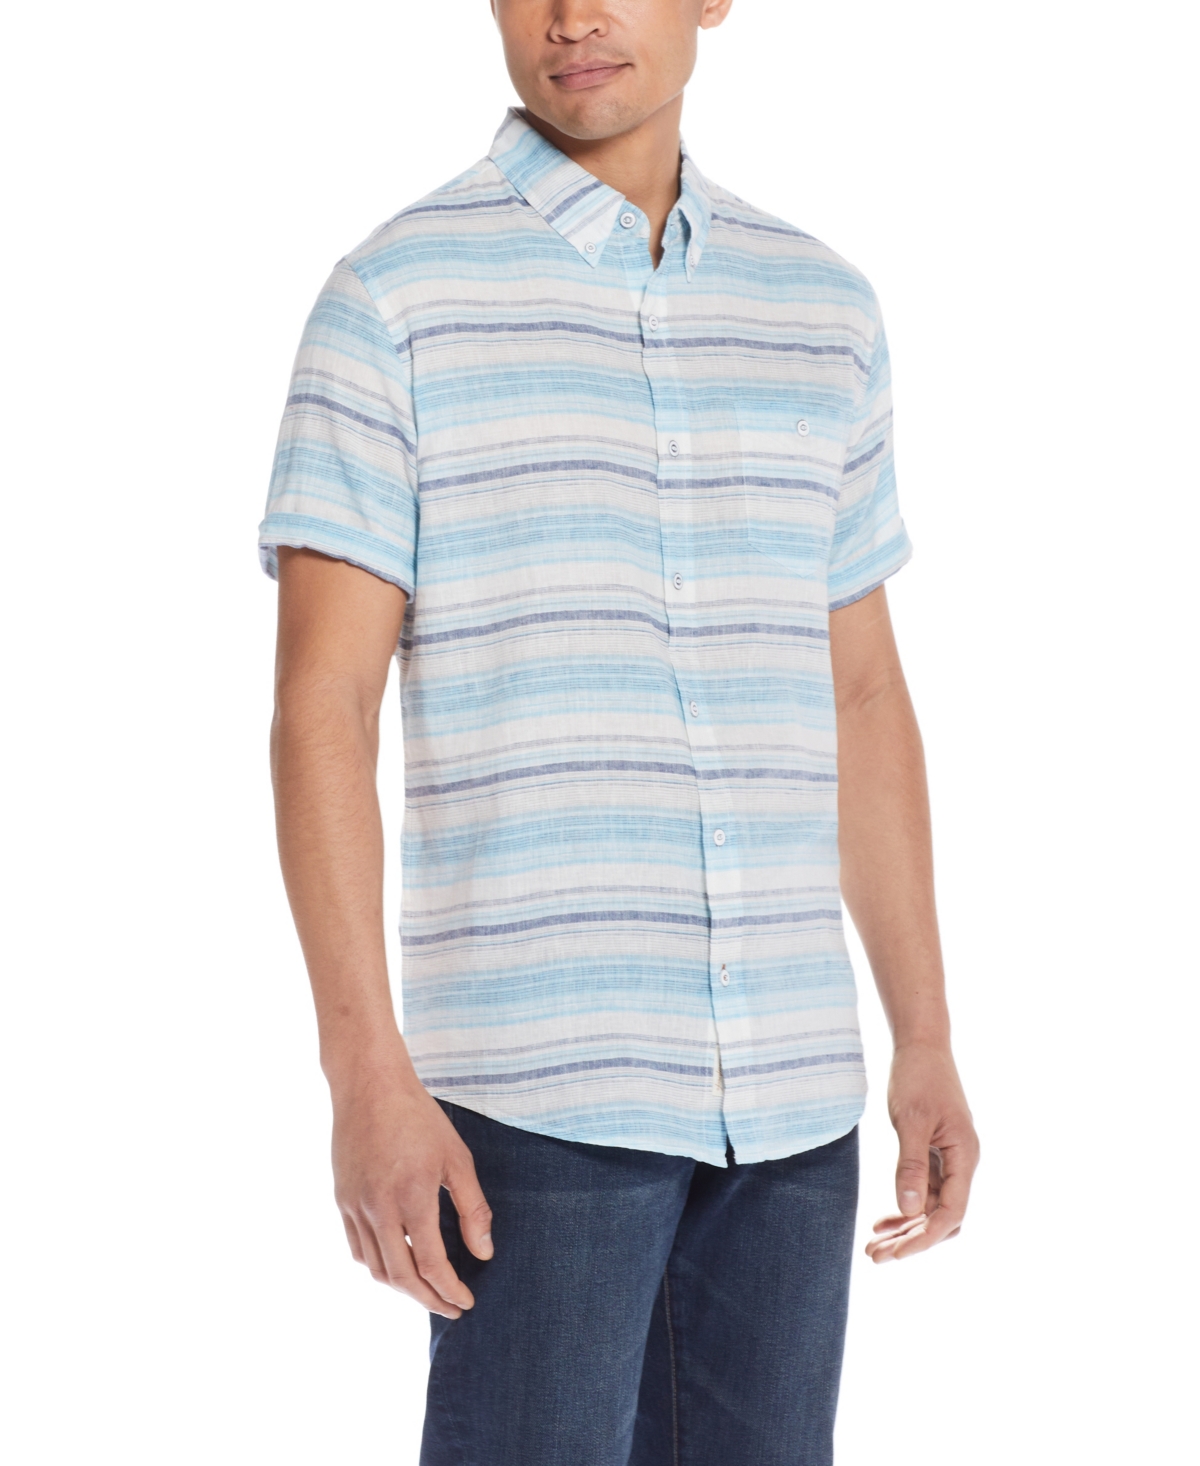 Men's Short Sleeve Stripe Linen Cotton Shirt - Peach Echo